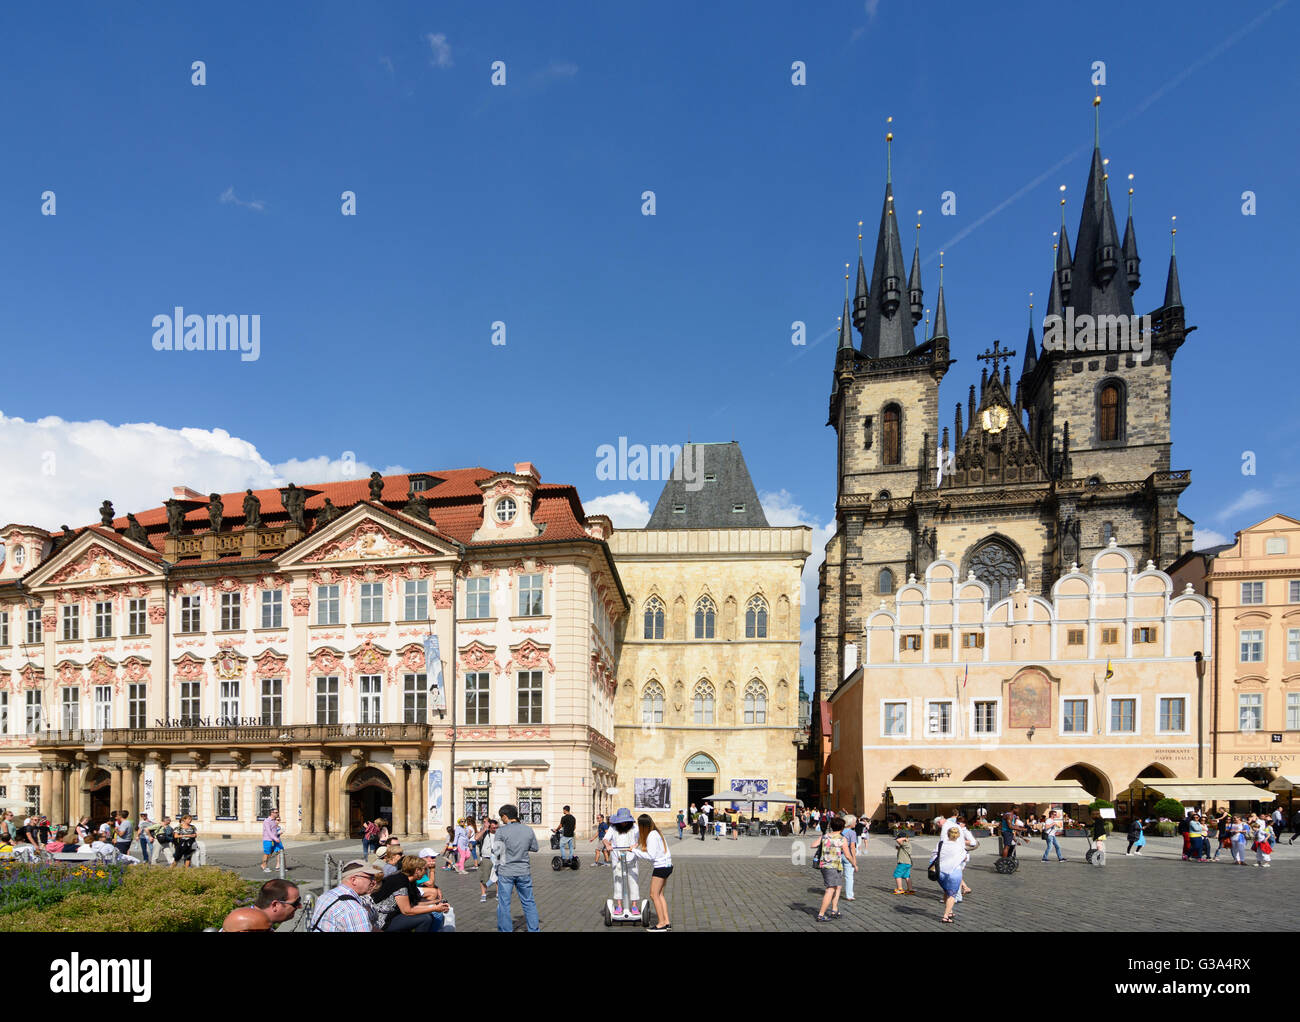 La place de la vieille ville, avec la cathédrale de Tyn, la République tchèque, Praha, Prague, Prague, Praha (Prague), Prague Banque D'Images